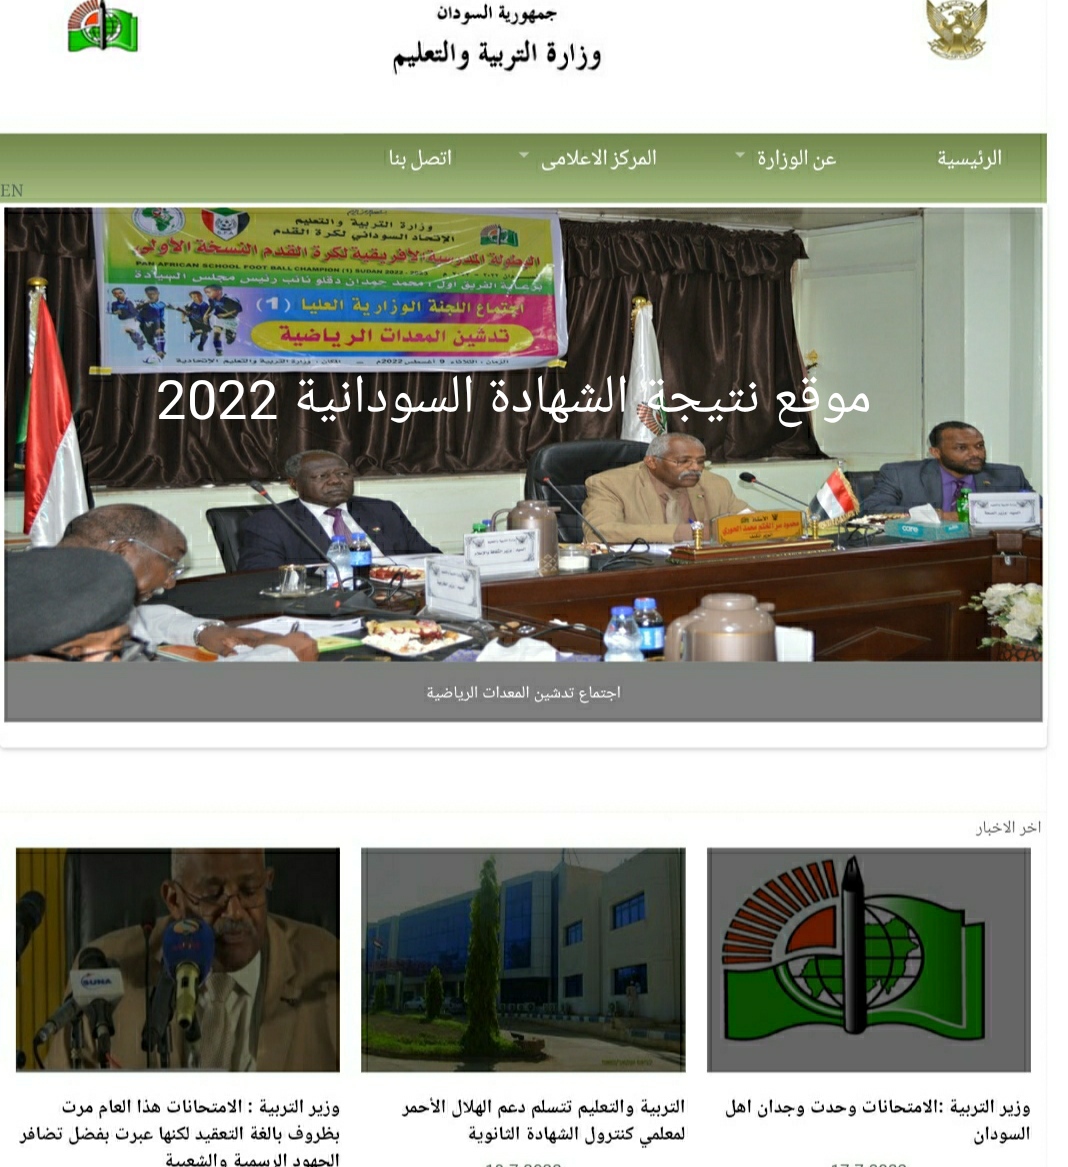 IMG 20220929 002328 1 - مدونة التقنية العربية